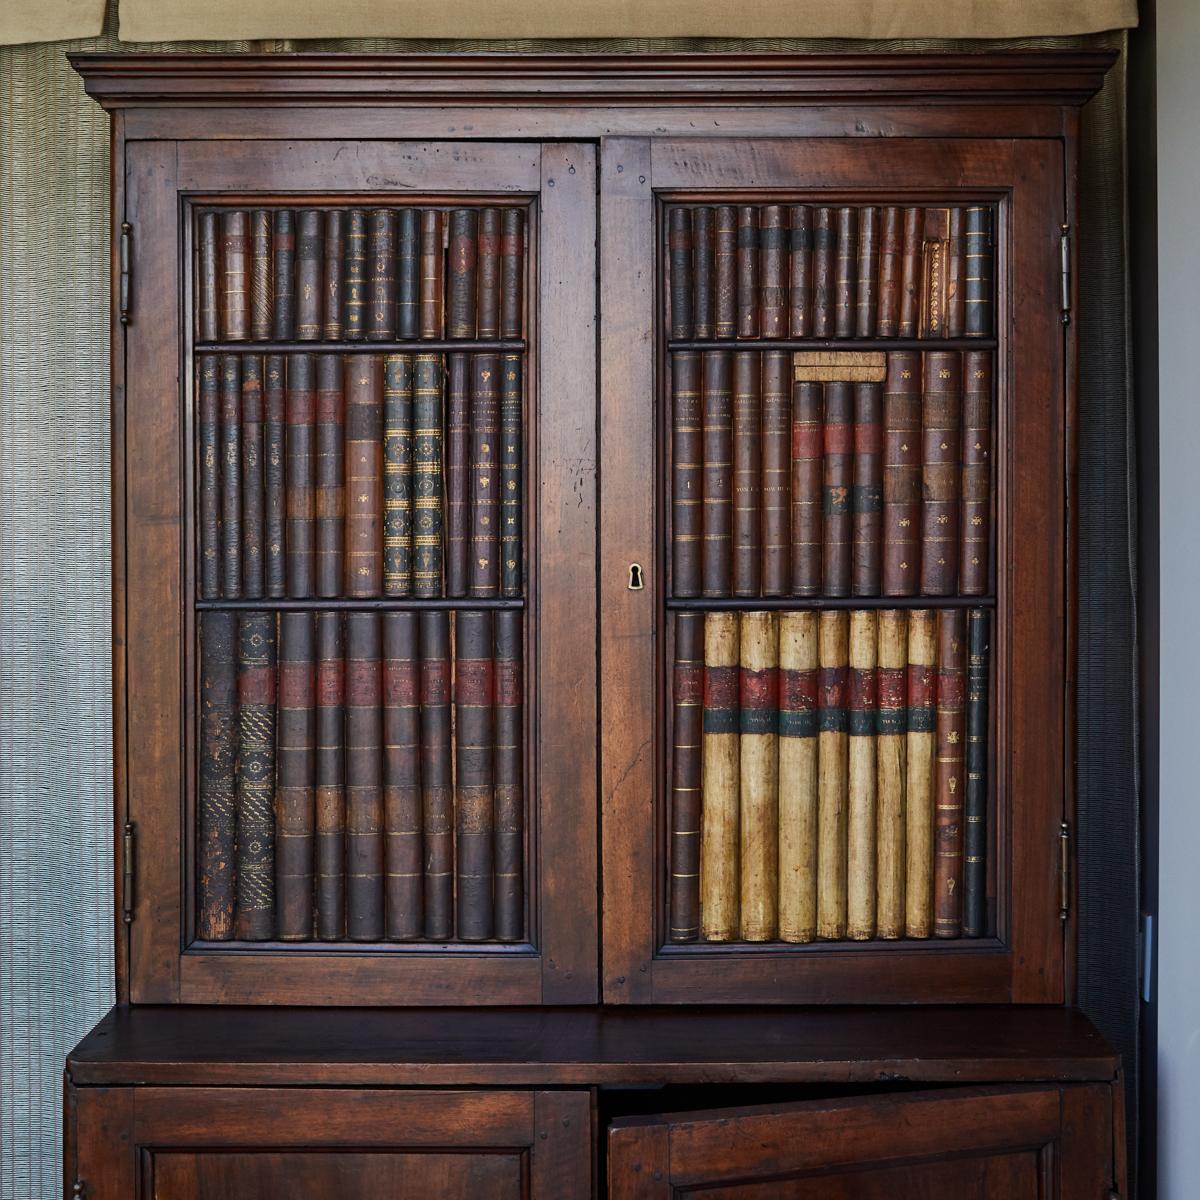 Dieser Schrank aus dem Italien des frühen 19. Jahrhunderts hat als Besonderheit geschnitzte Buchrücken, die den Eindruck einer vollständigen Bibliothek vermitteln. Die erworbene Patina hat diesen Effekt noch verstärkt und die Handwerkskunst noch